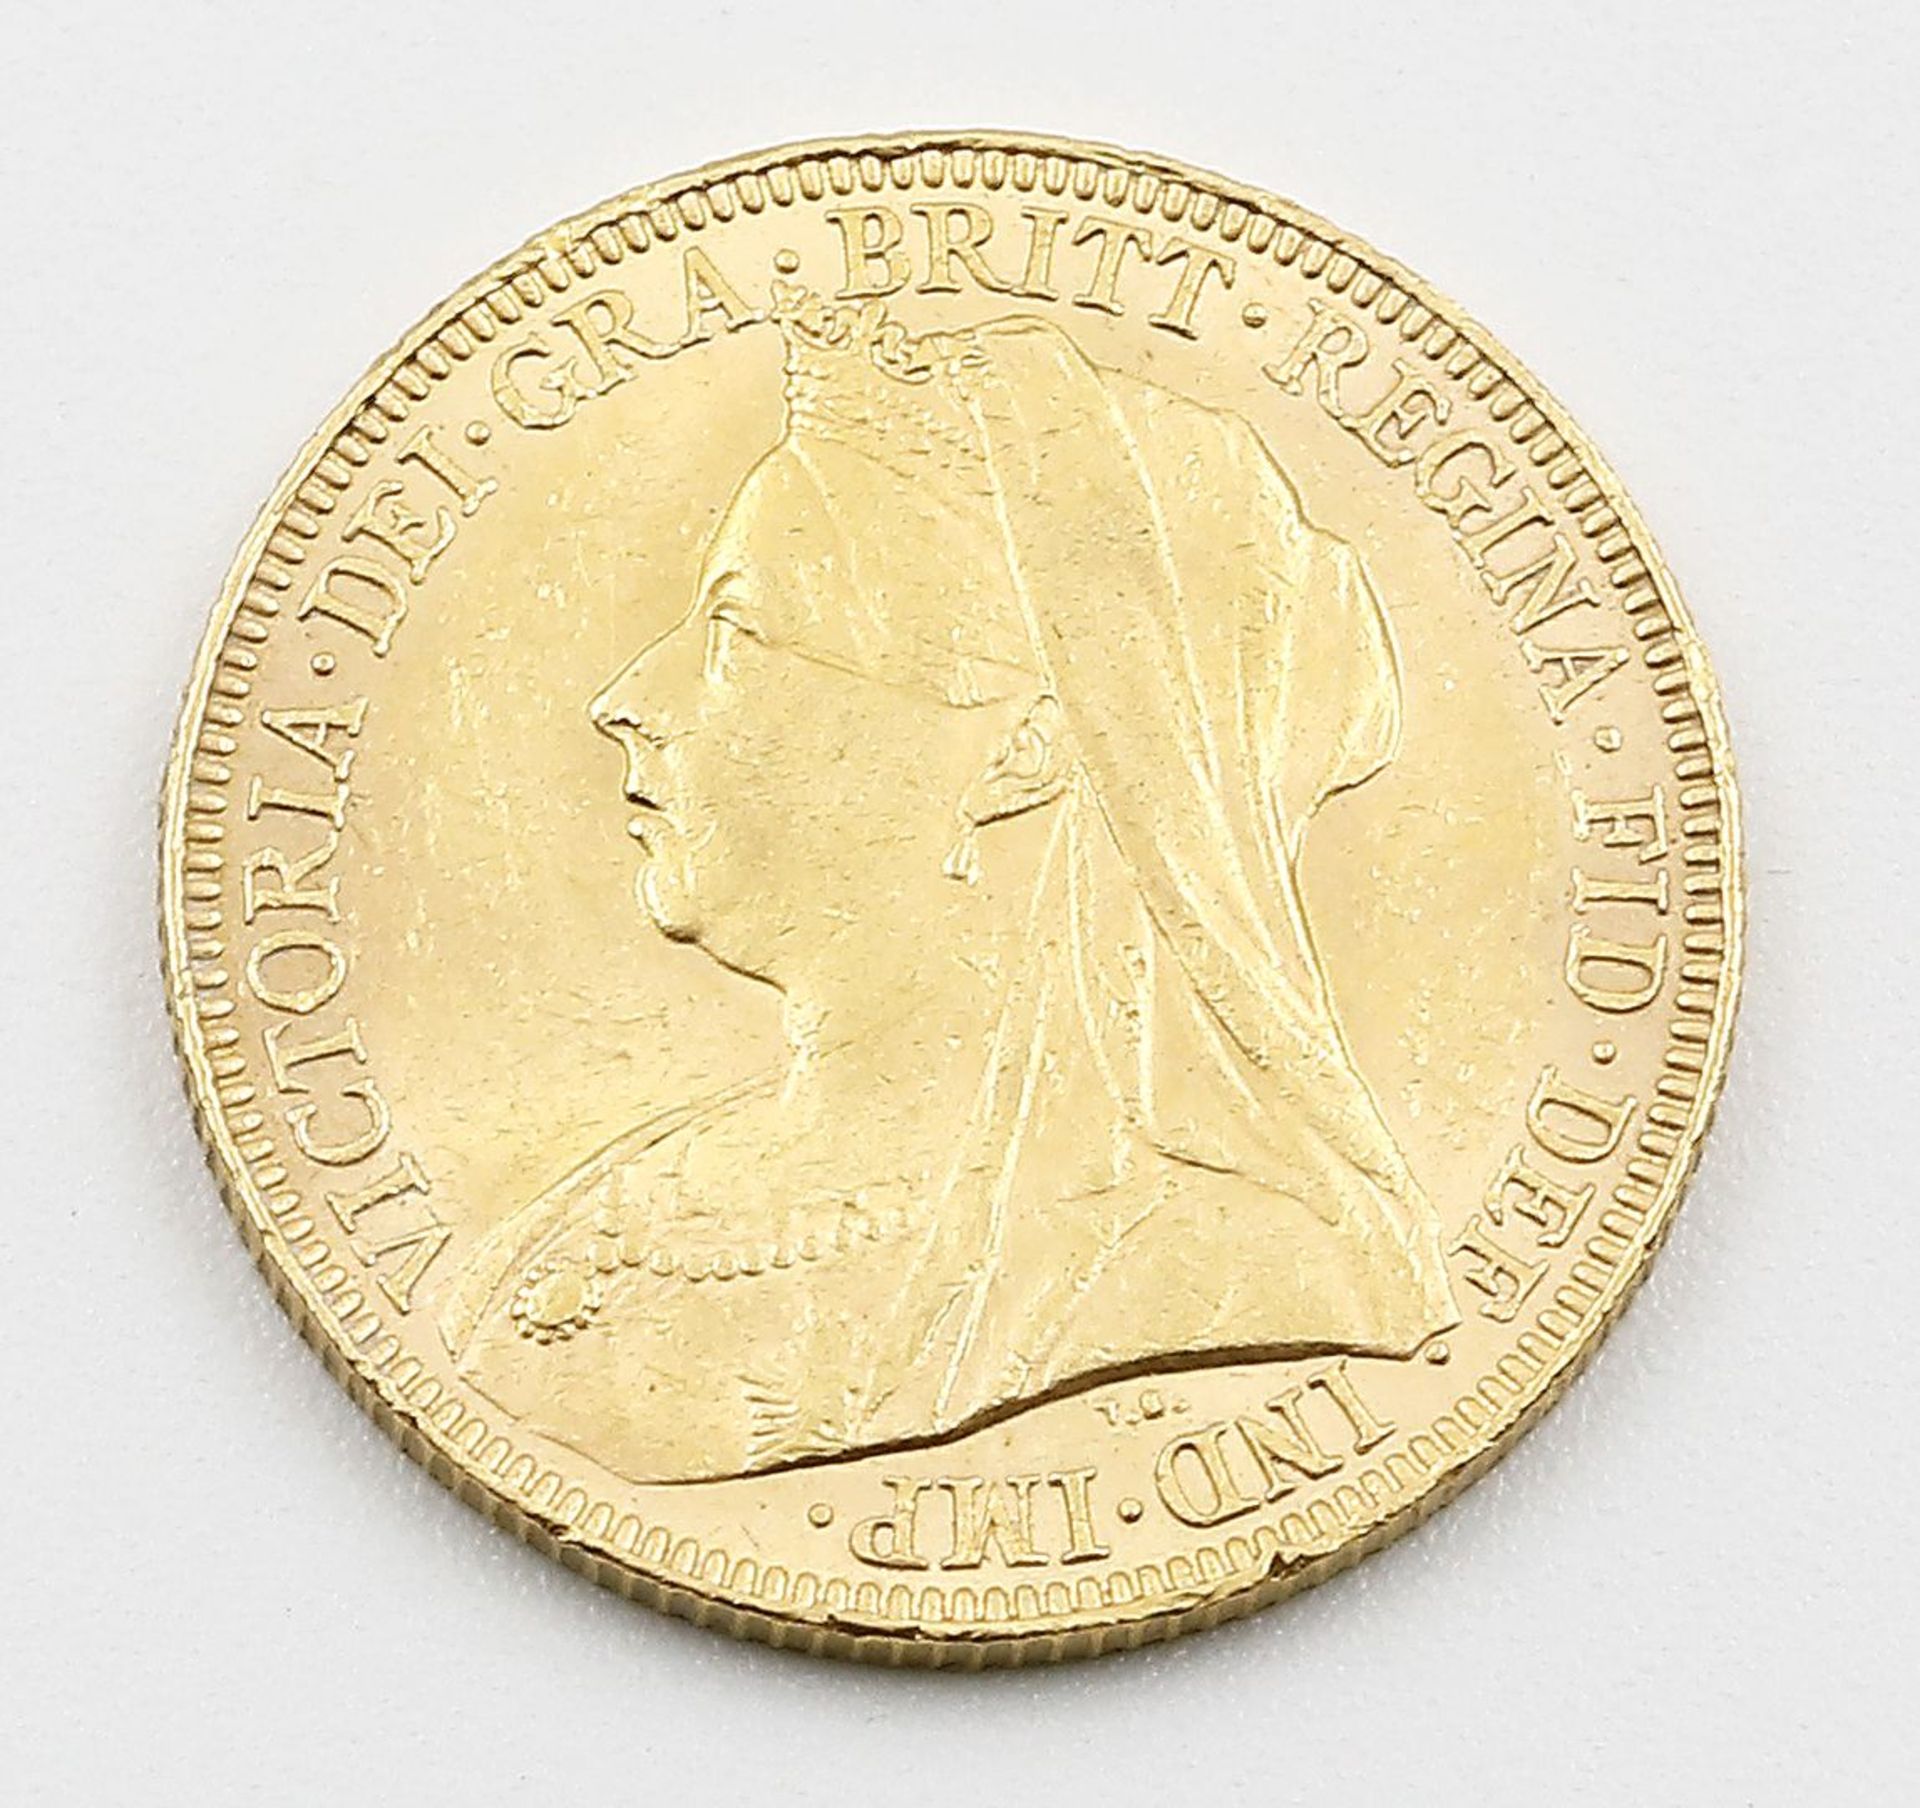 Großbritannien, Victoria, Sovereign (1 Pfund) 1894. - Image 2 of 2